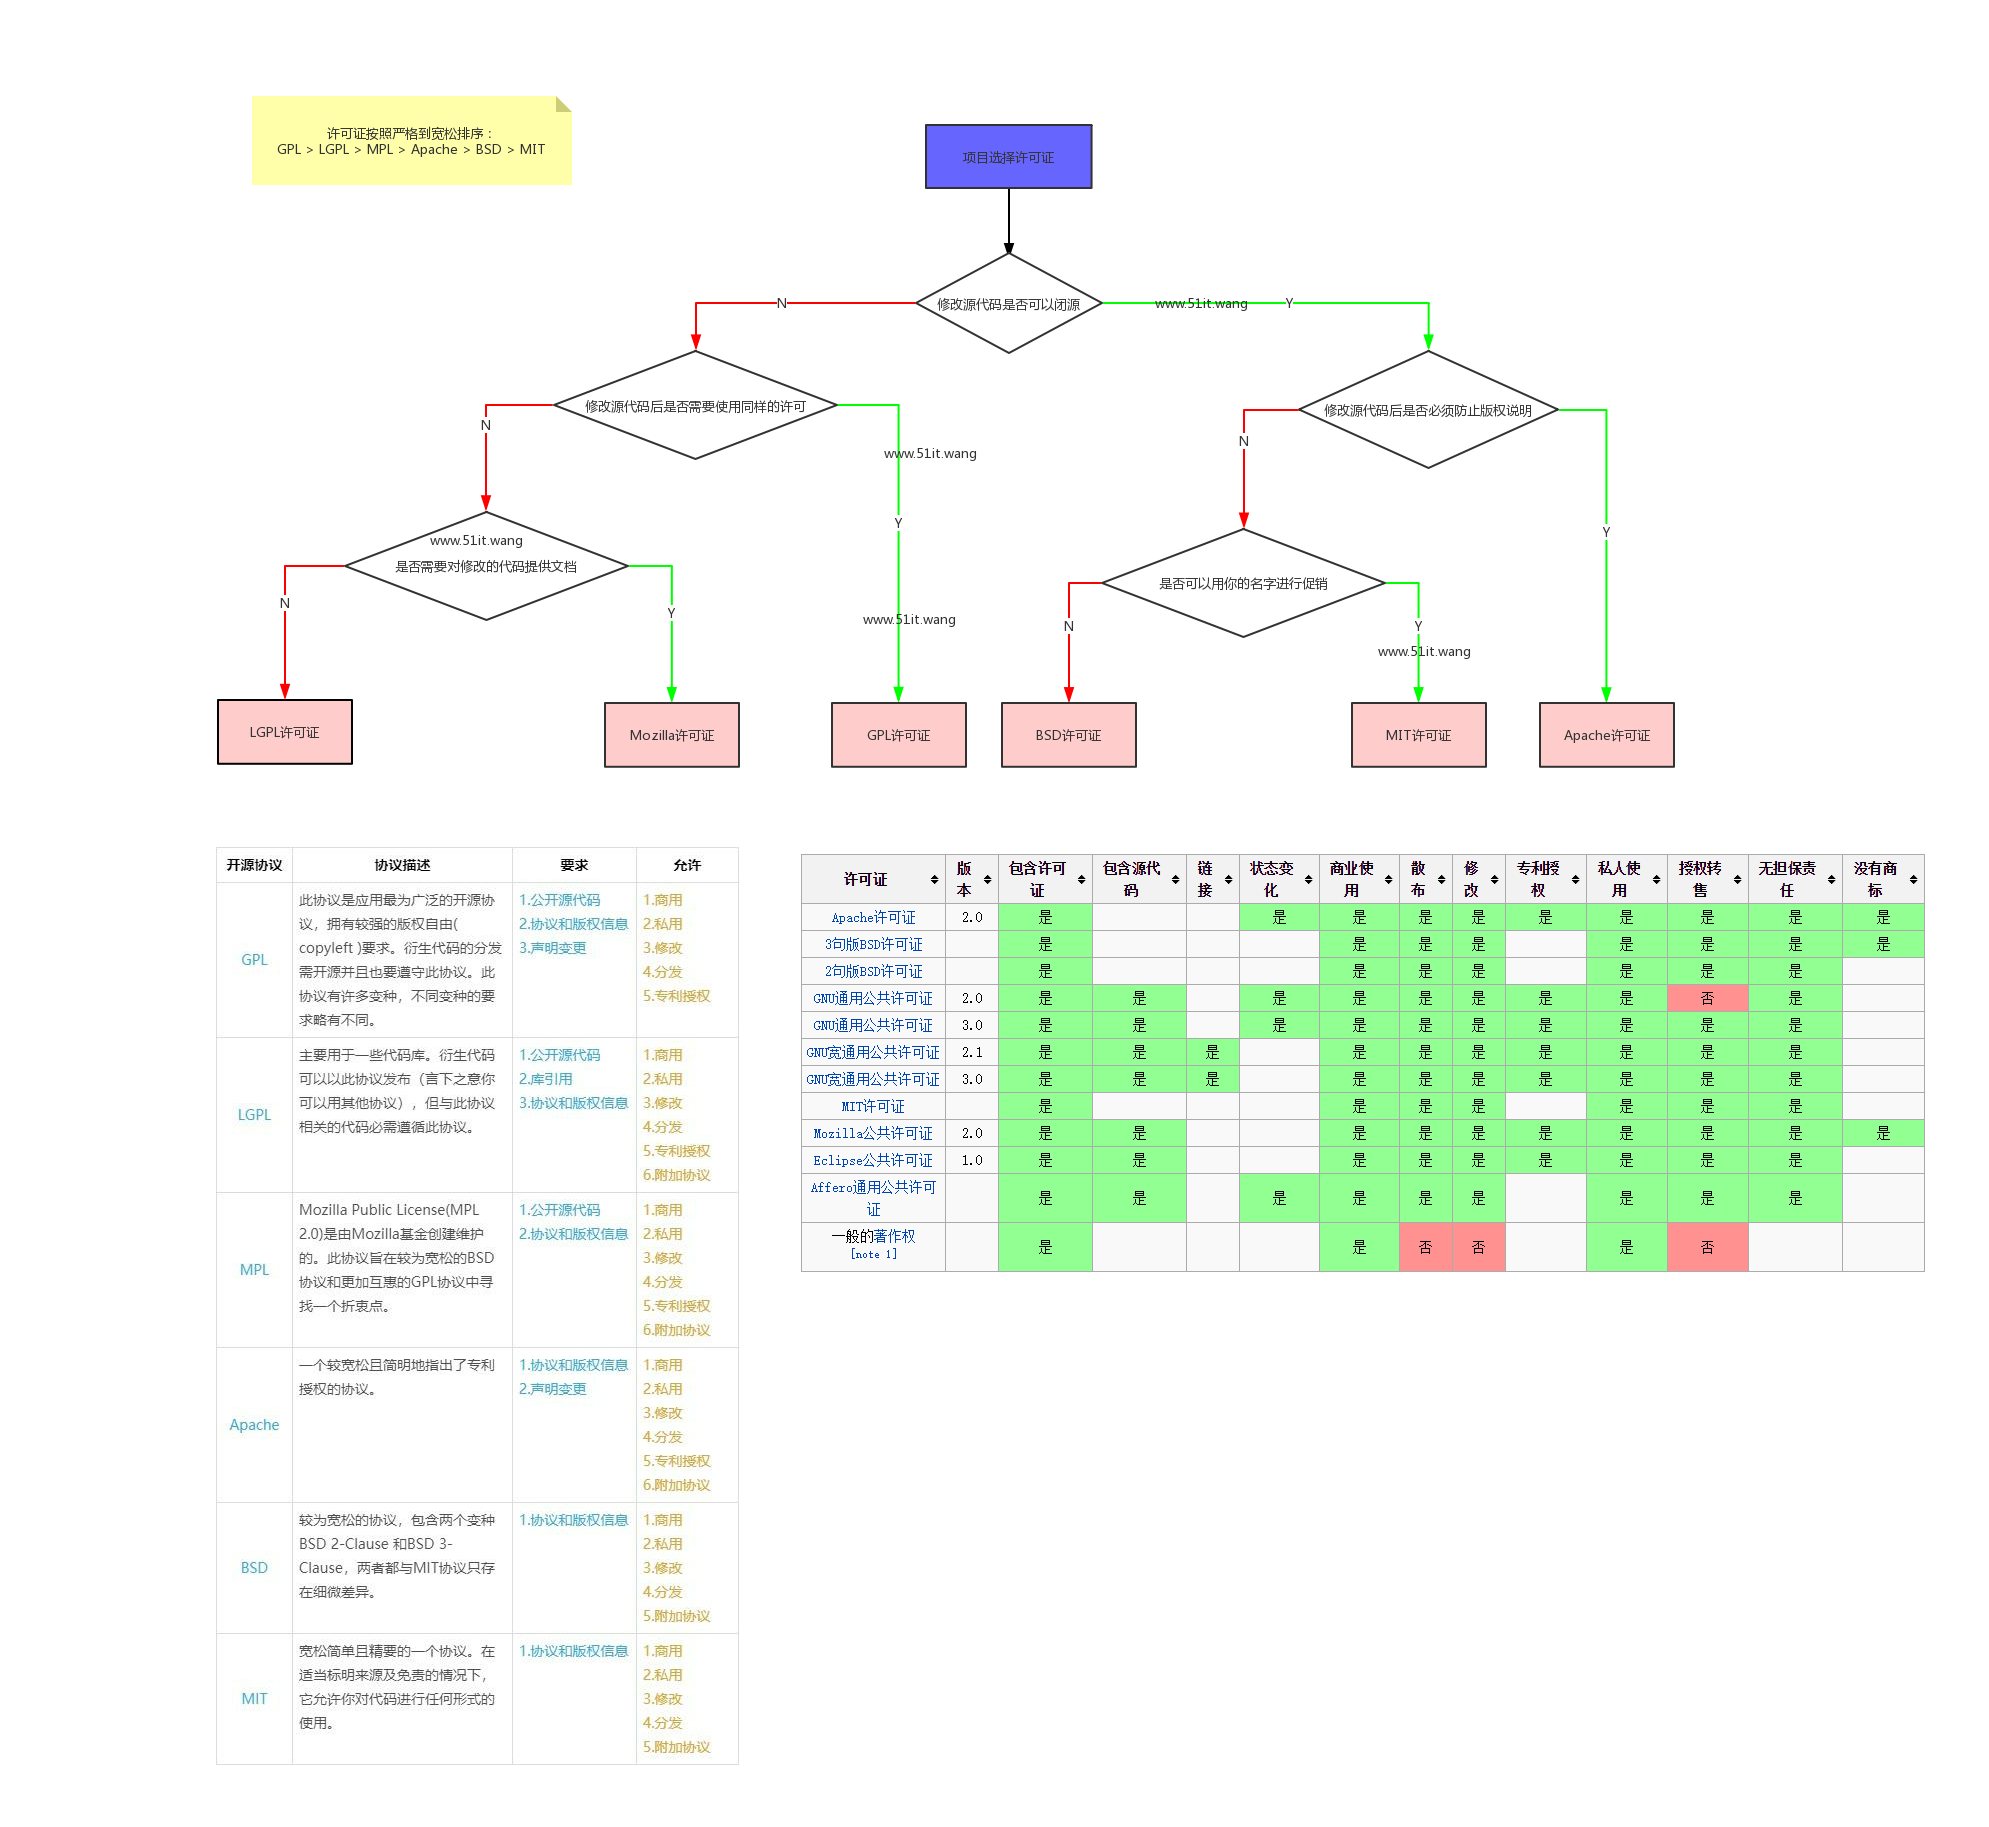 【原创】一张图看懂常见的几种开源许可协议